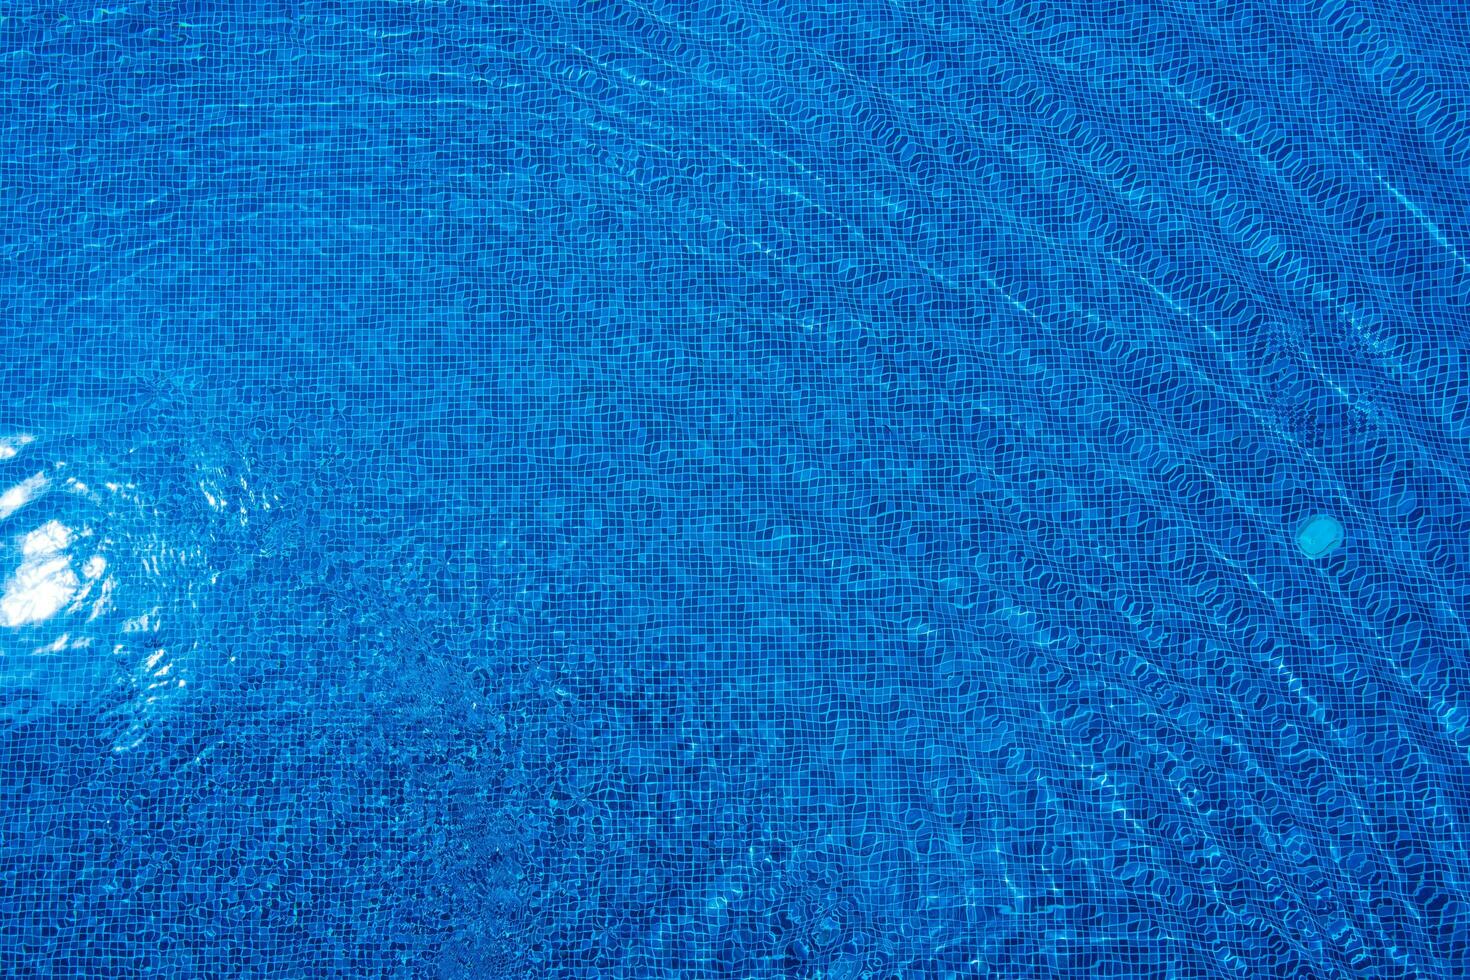 leggero riflette via il superficie di il blu nuoto piscina. foto